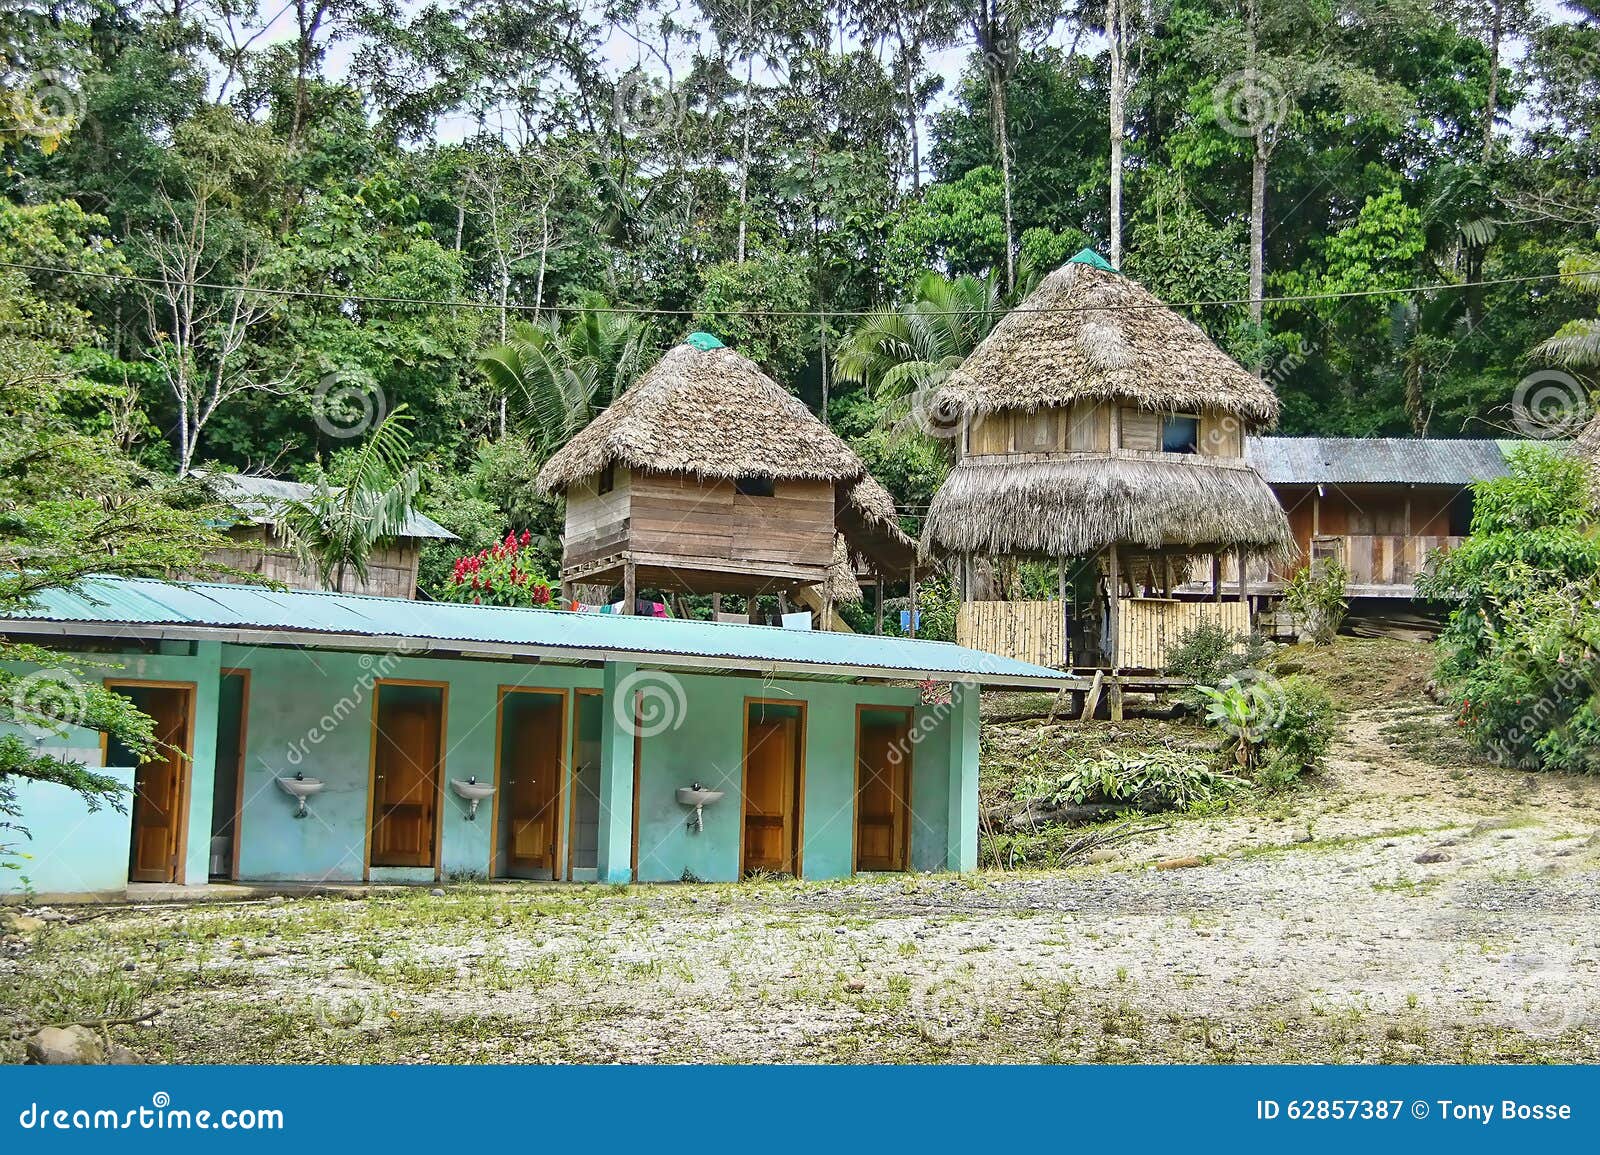 remote amazon jungle lodging